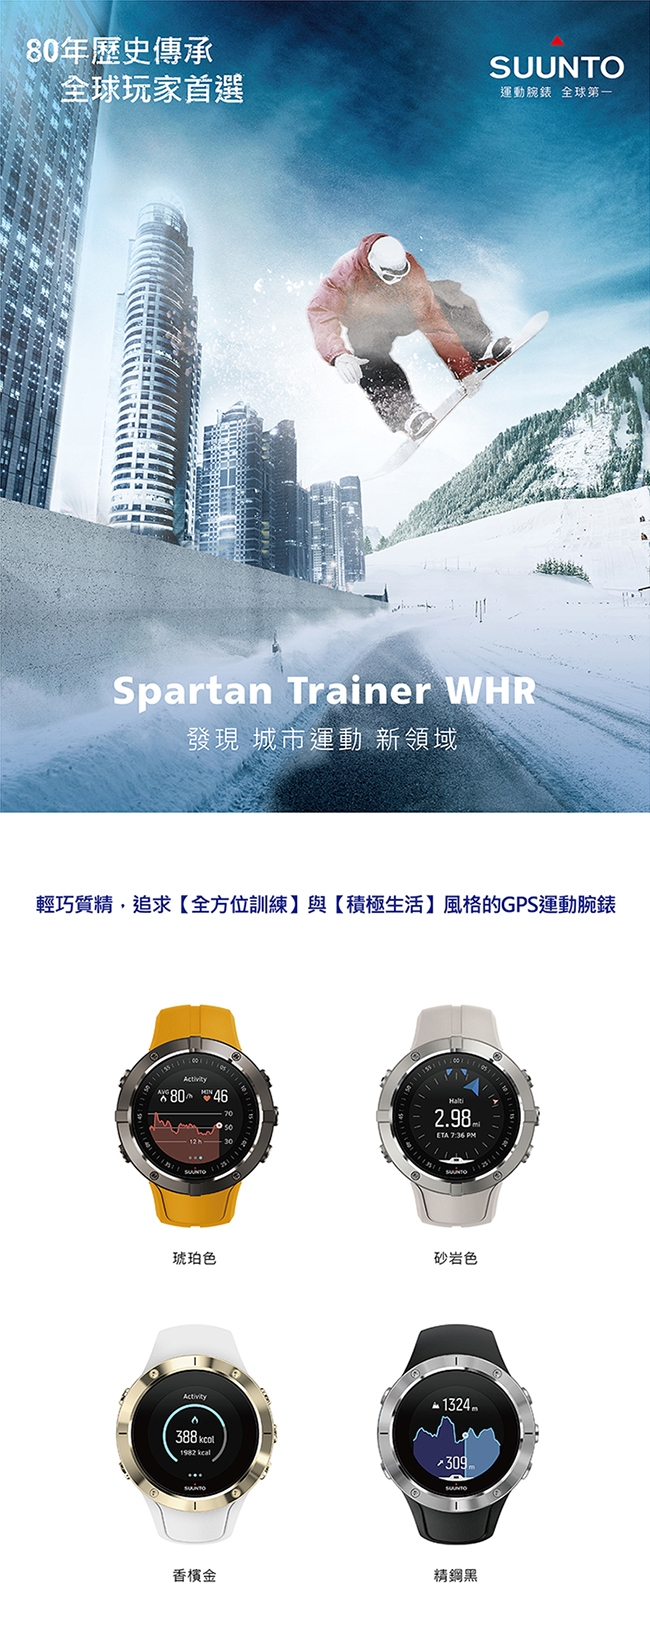 SuuntoSpartanTrainerWristHR全方位訓練的GPS運動腕錶-香檳金